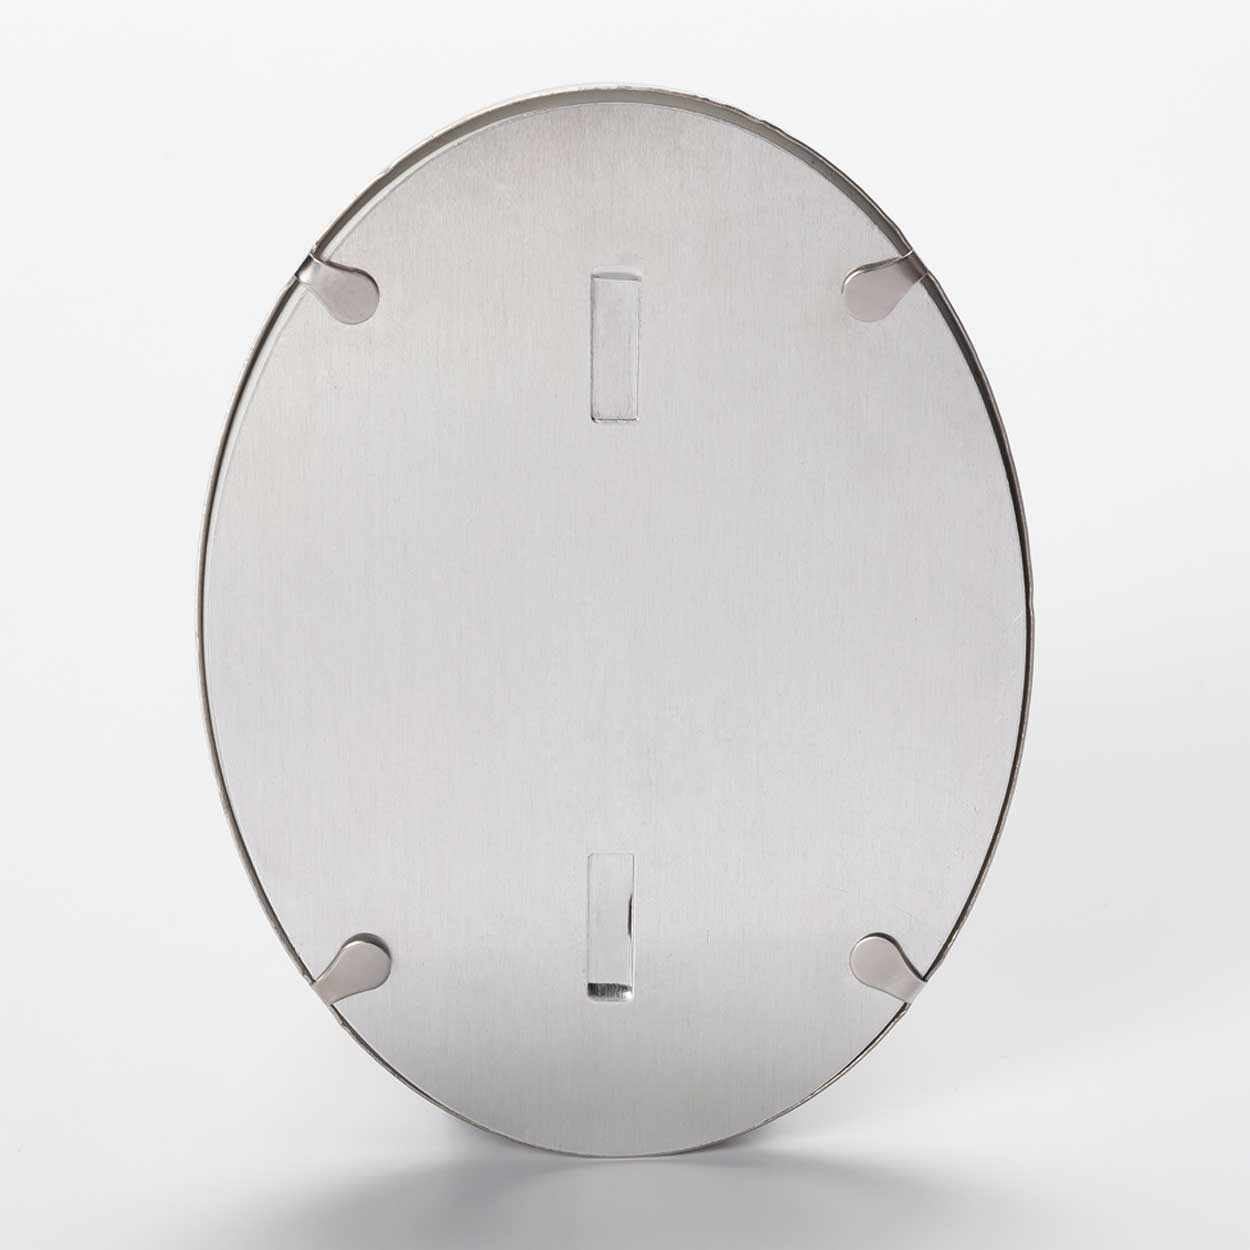 Fotocerámica oval con marco de acero inoxidable